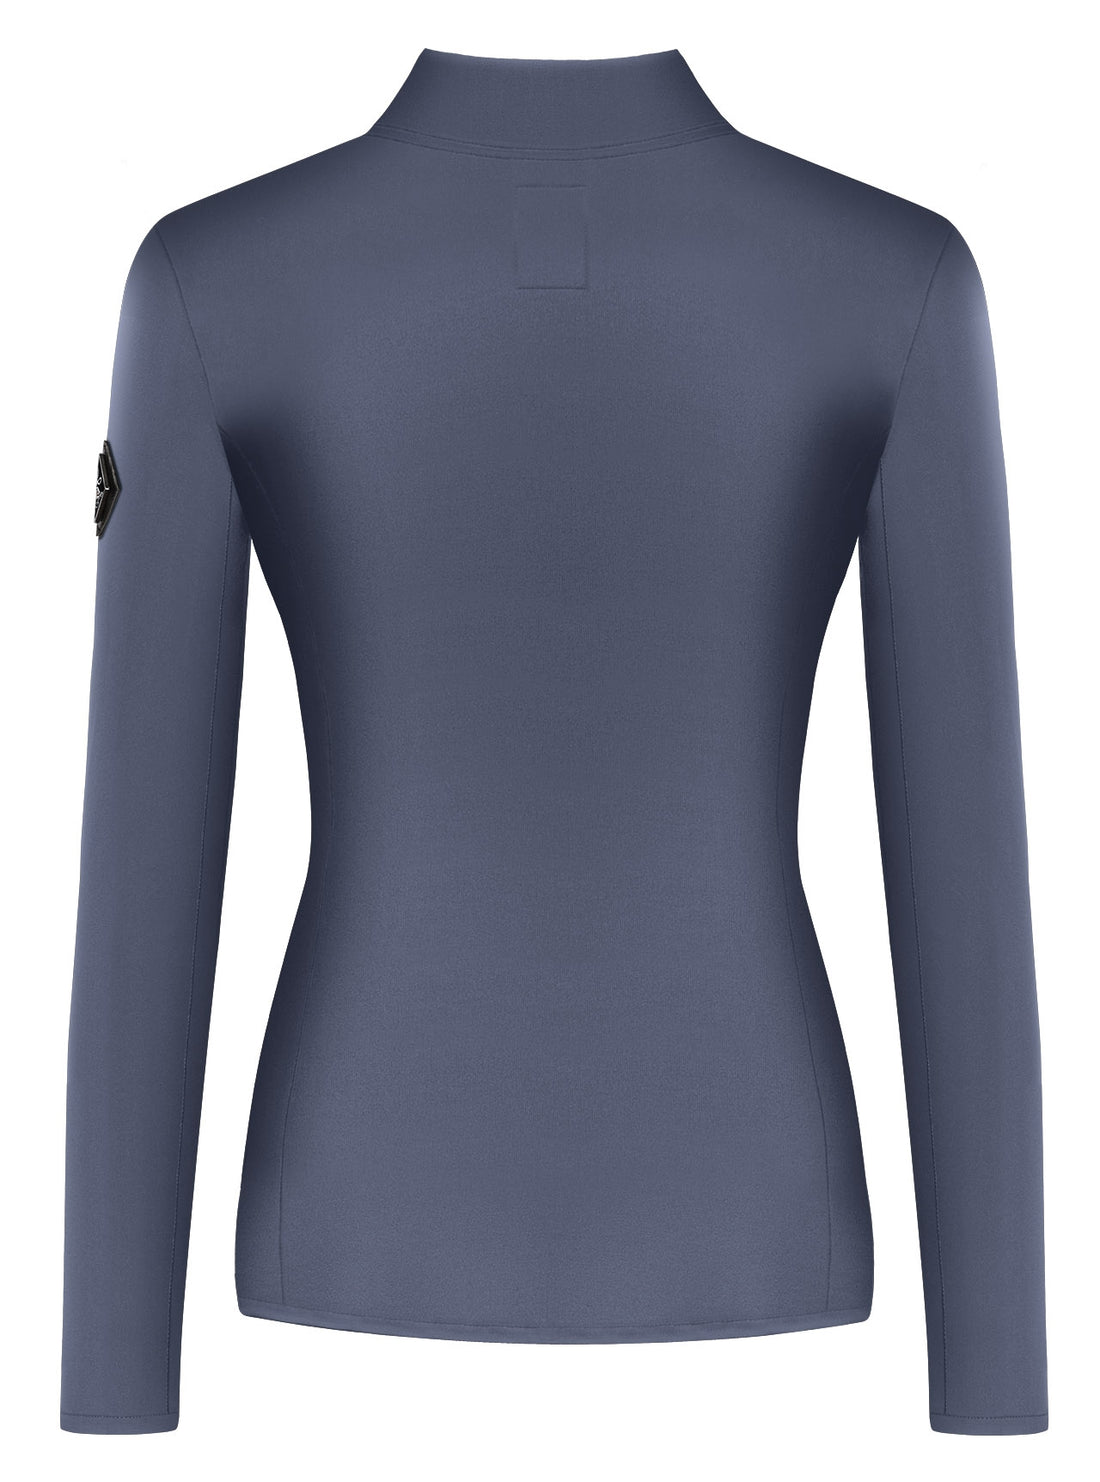 Fairplay Arianna Sweatshirt, med et flot design og look. Dejlig behagelig trøje med smukke detaljer.